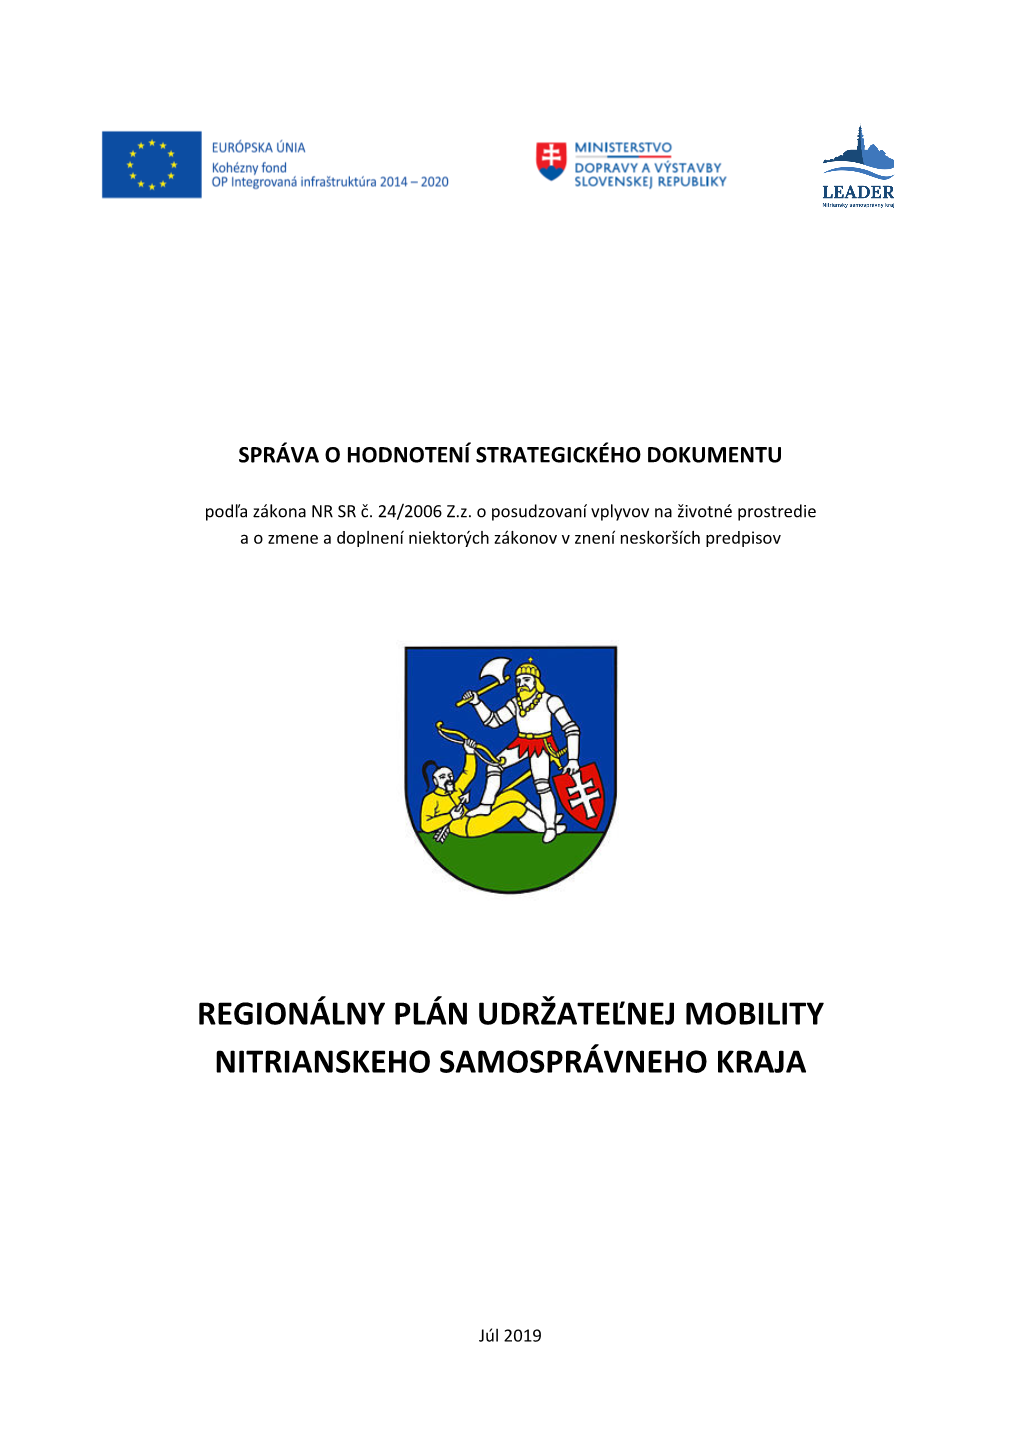 Regionálny Plán Udržateľnej Mobility Nitrianskeho Samosprávneho Kraja